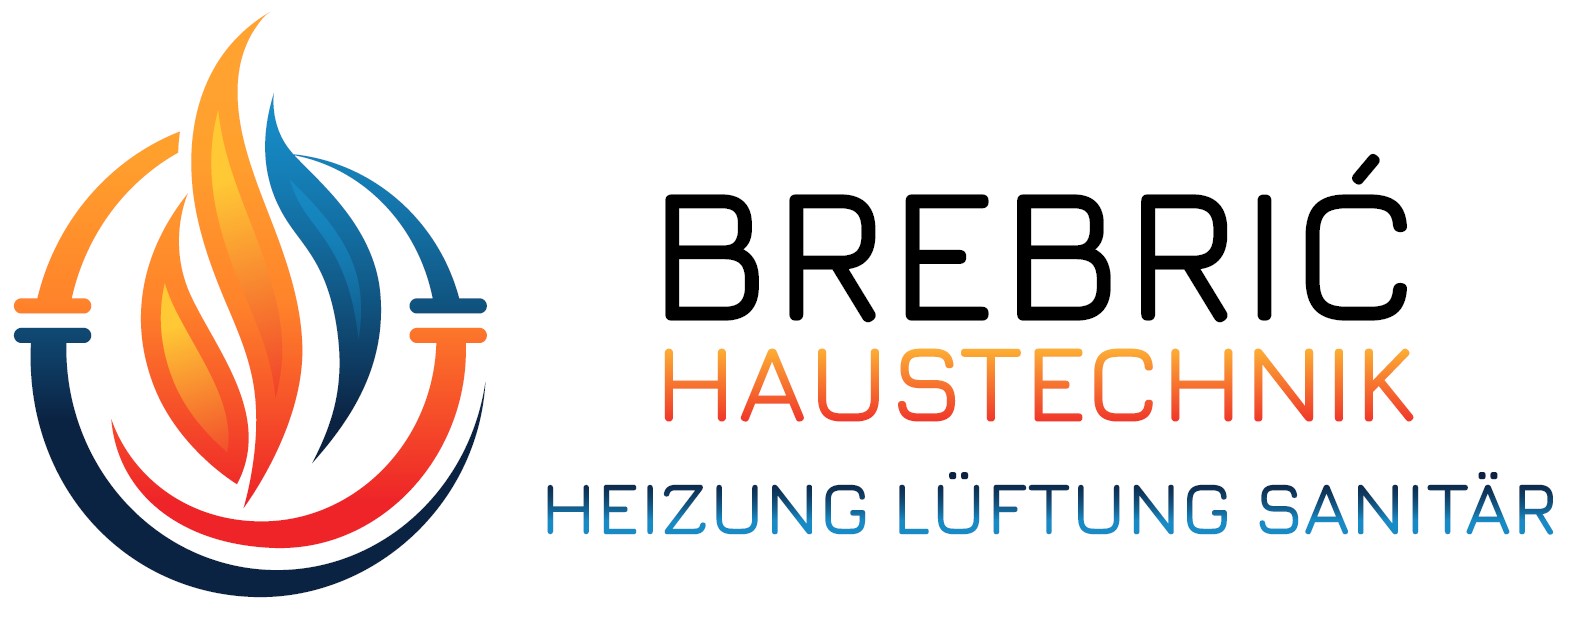 Brebric Haustechnik I Heizung I Sanitär I München Logo